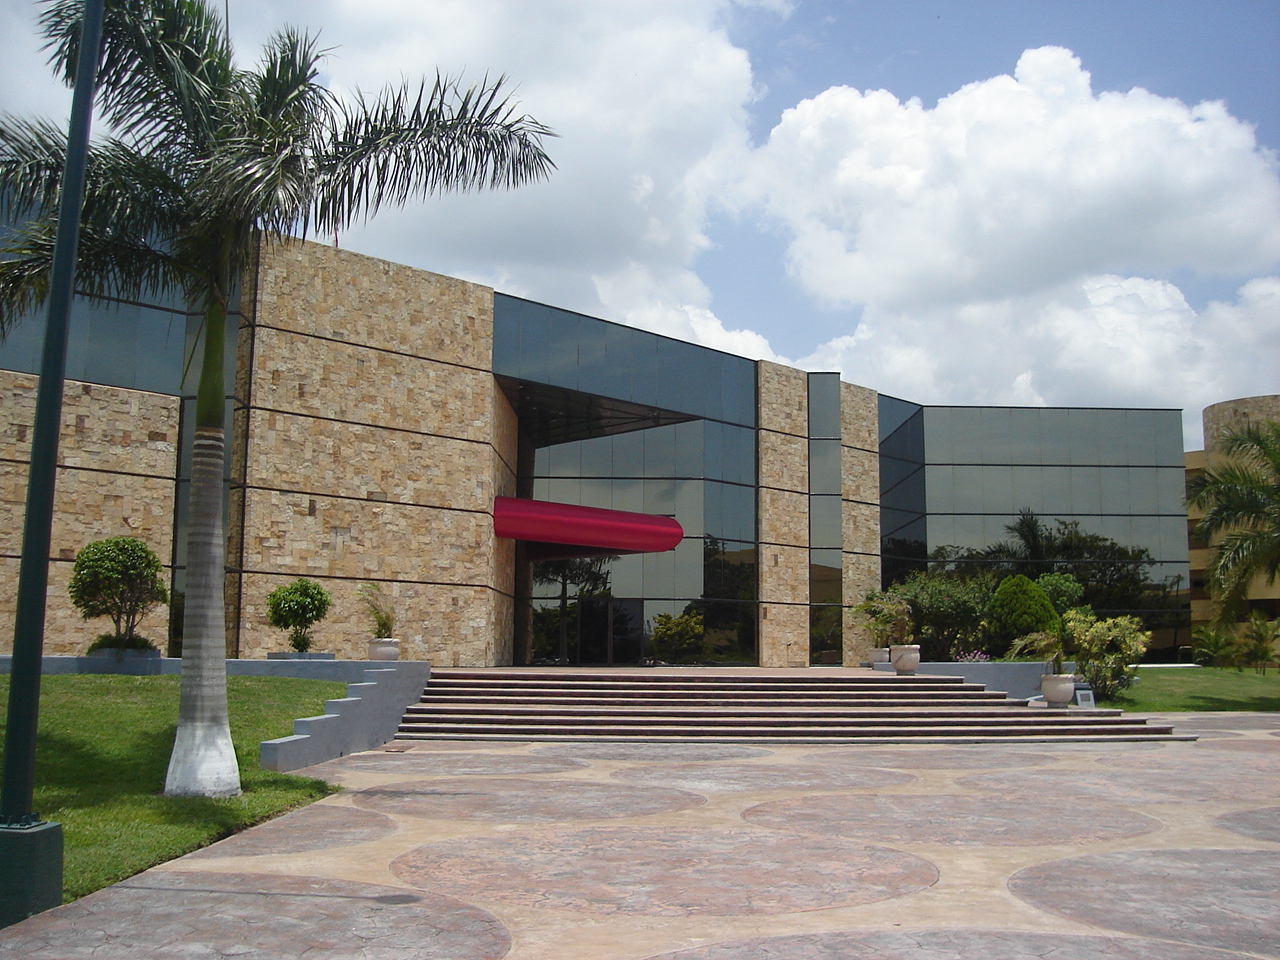 Deel van de campus van Tec de Monterrey. Foto Delfin calb / Wikimedia Commons